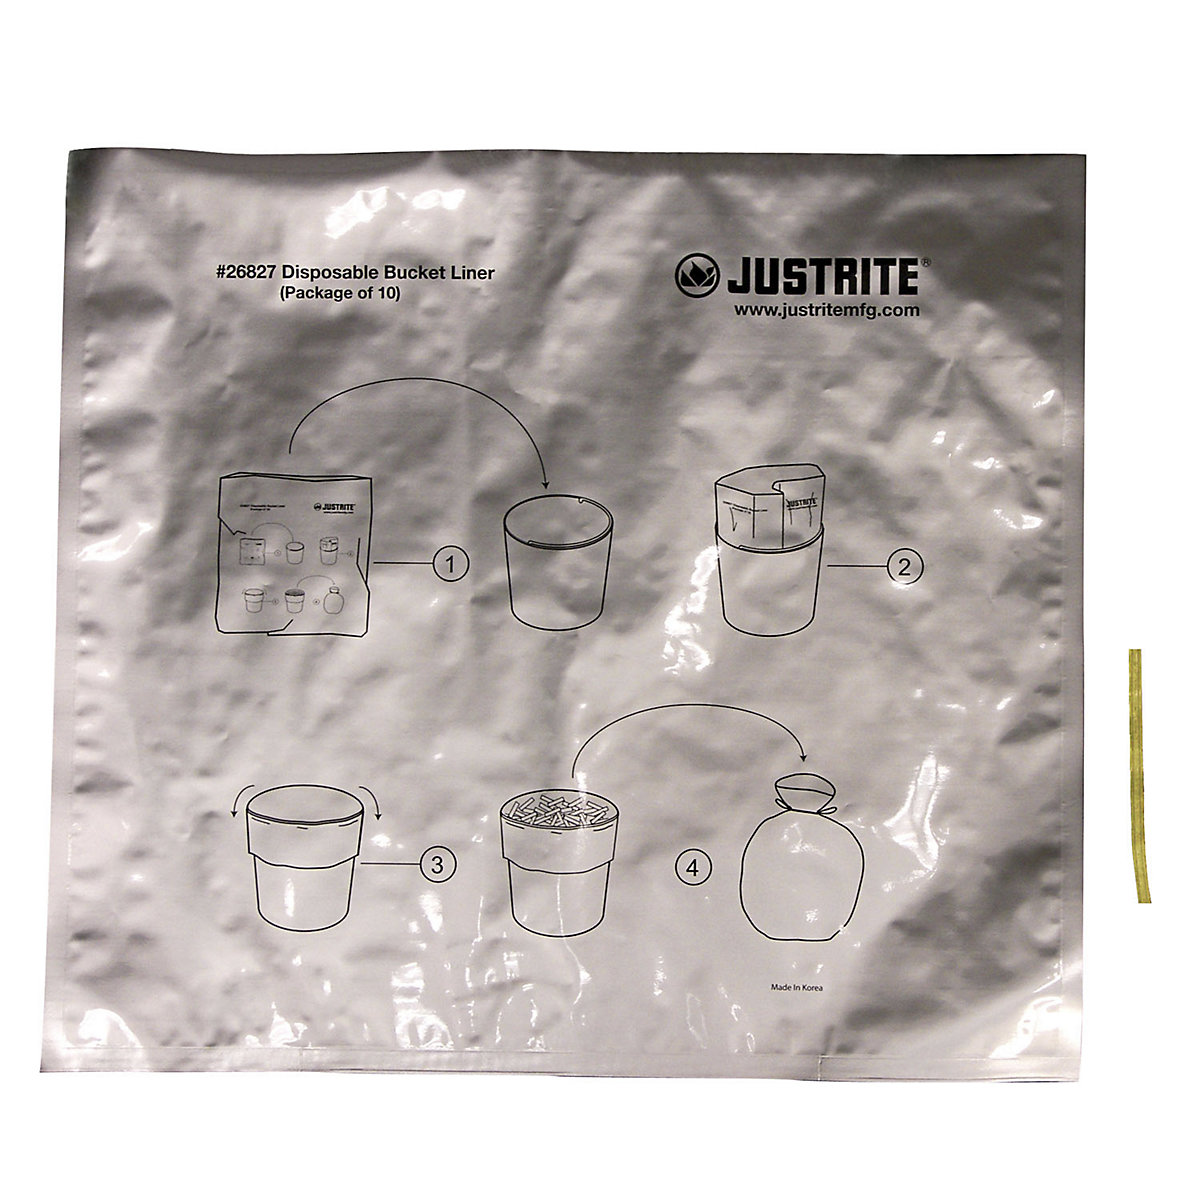 Sacchetti in alluminio per rifiuti speciali per posacenere autoportanti - Justrite